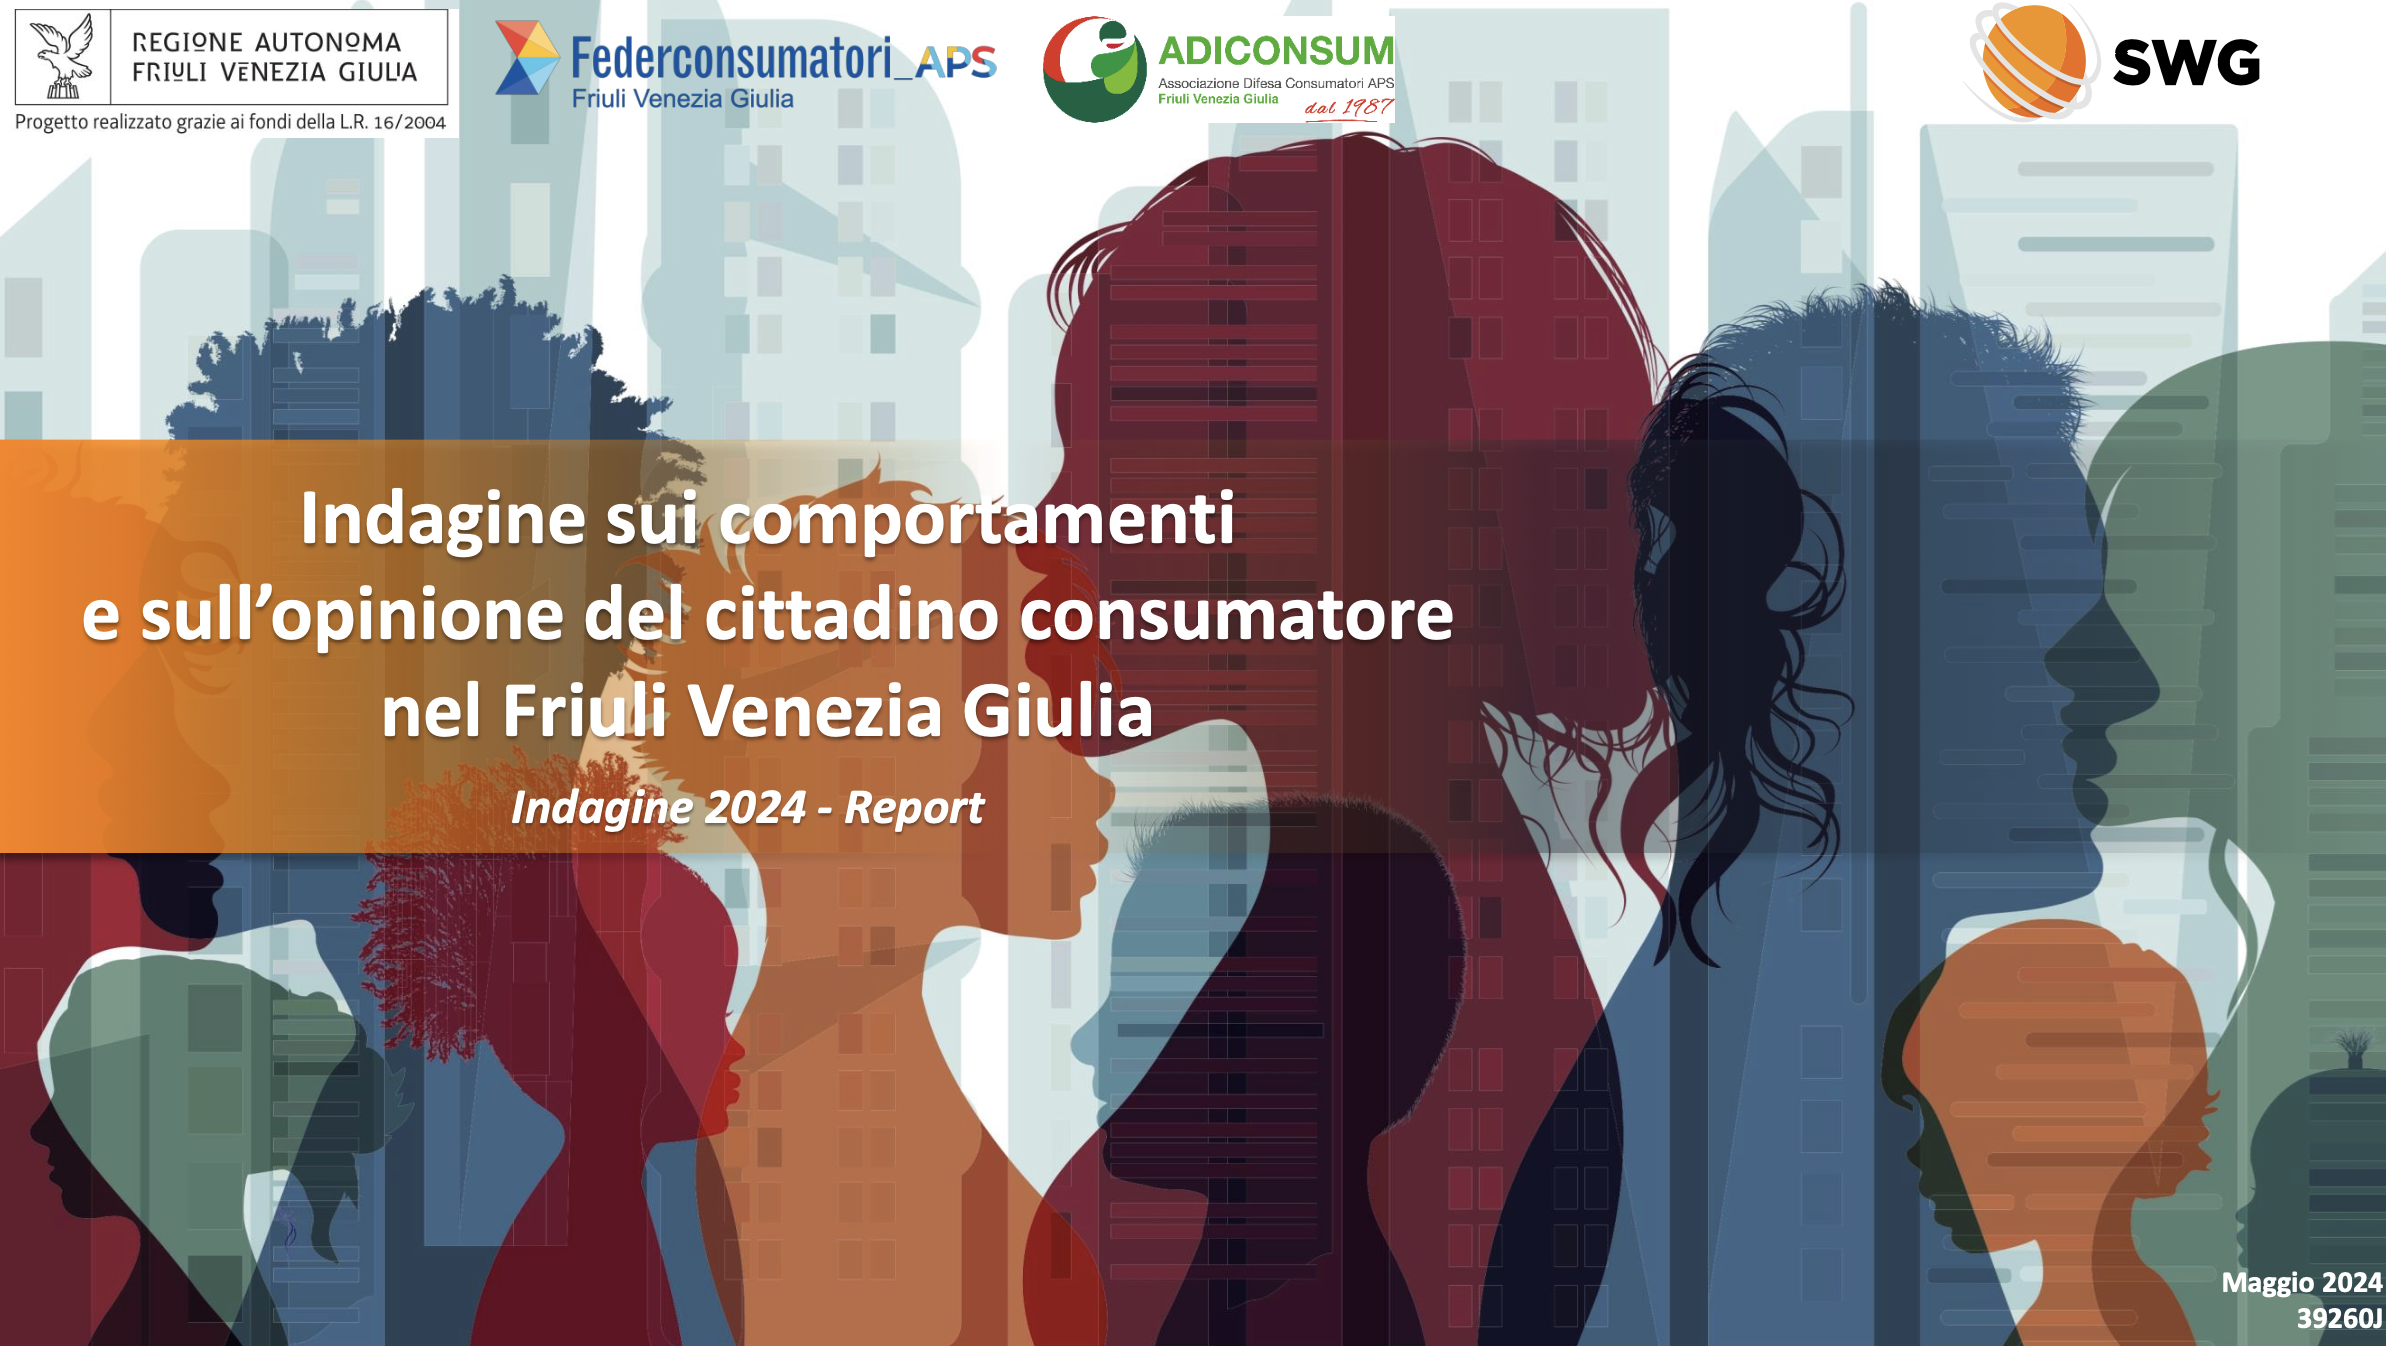 Copertina Indagine sui comportamenti e sull’opinione del cittadino consumatore<br />
nel Friuli Venezia Giulia